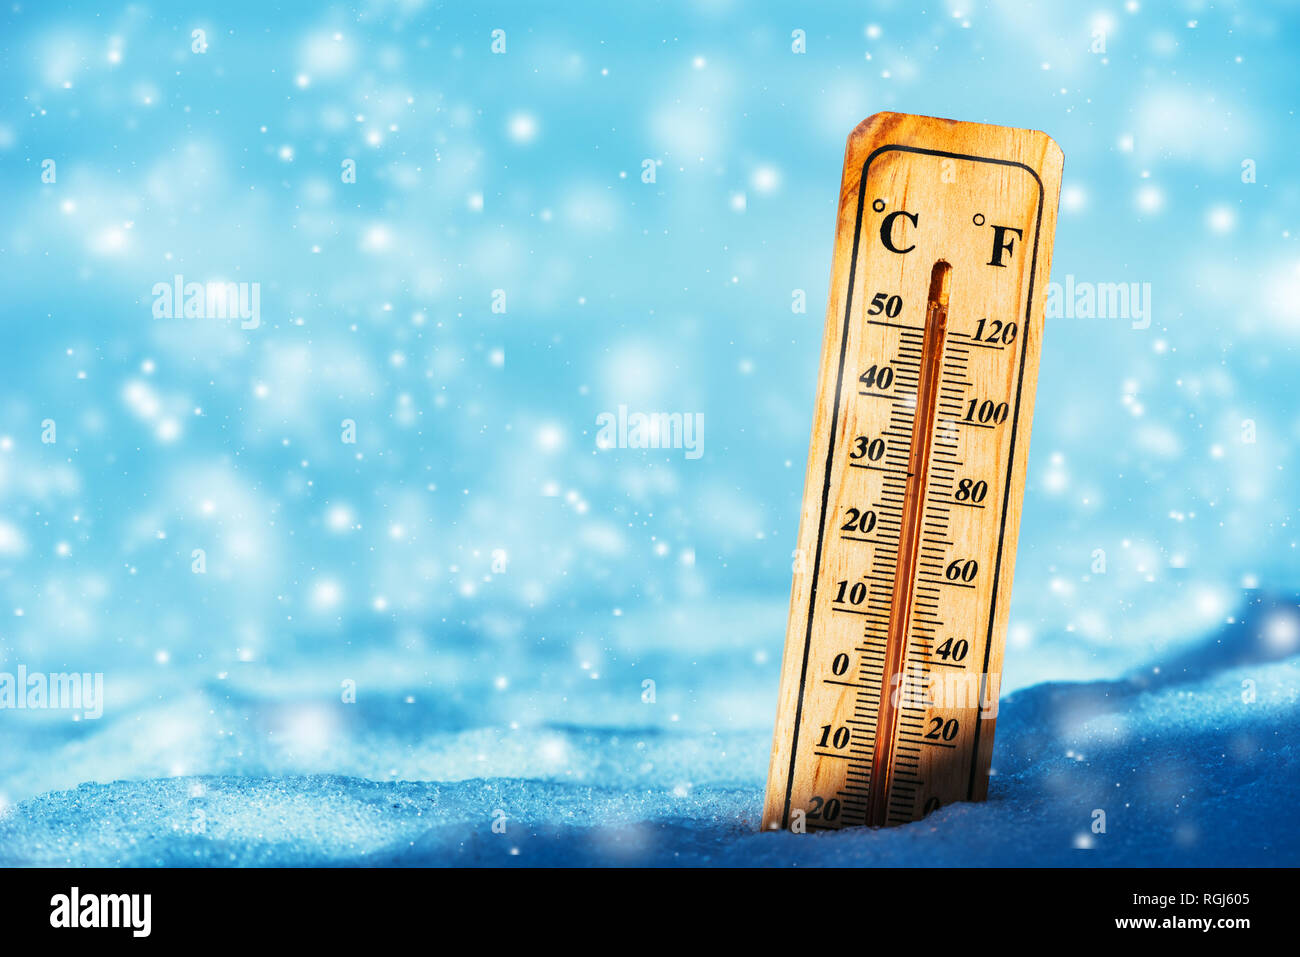 La température froide en dessous de zéro sur le thermomètre dans la neige durant la saison d'hiver Banque D'Images